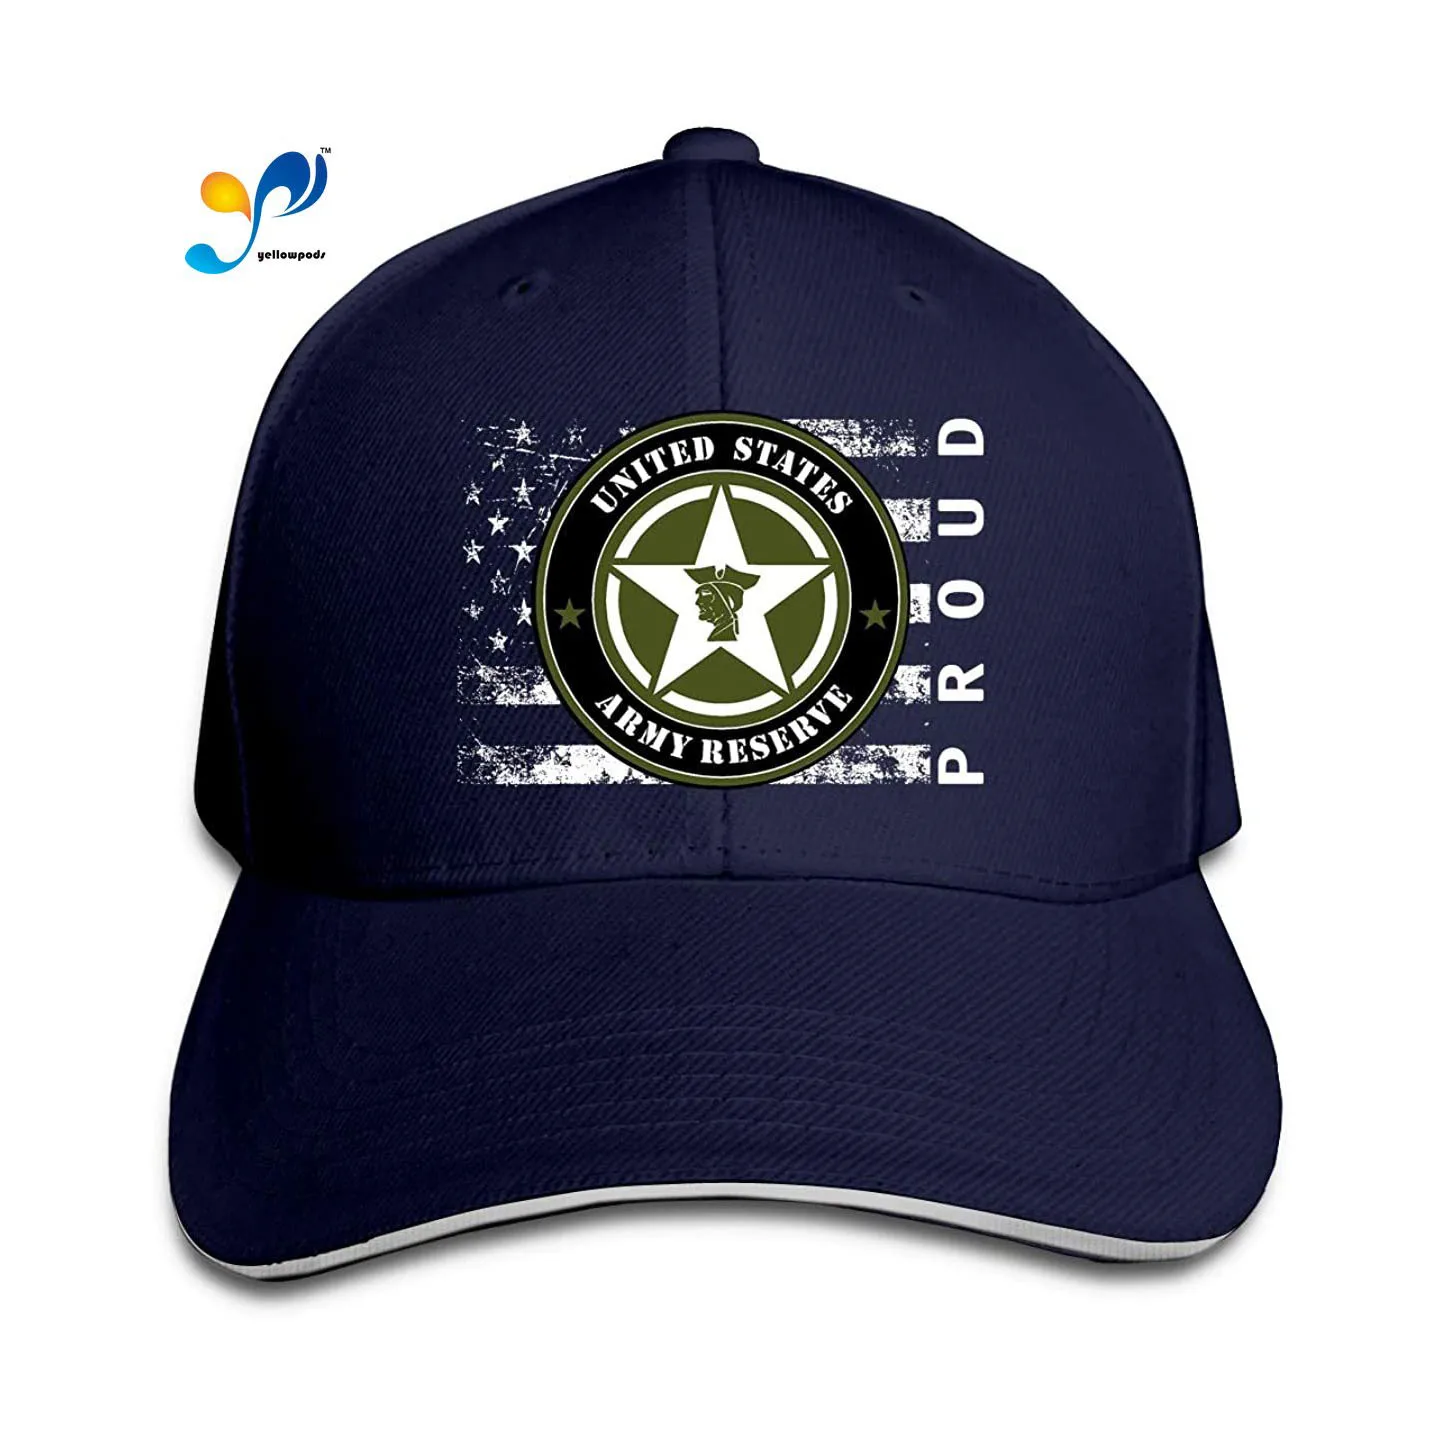 

United States Army Reserve Proud American Men Classic Outdoor Casquette Peak Cap Moto Gp Baseball Cap